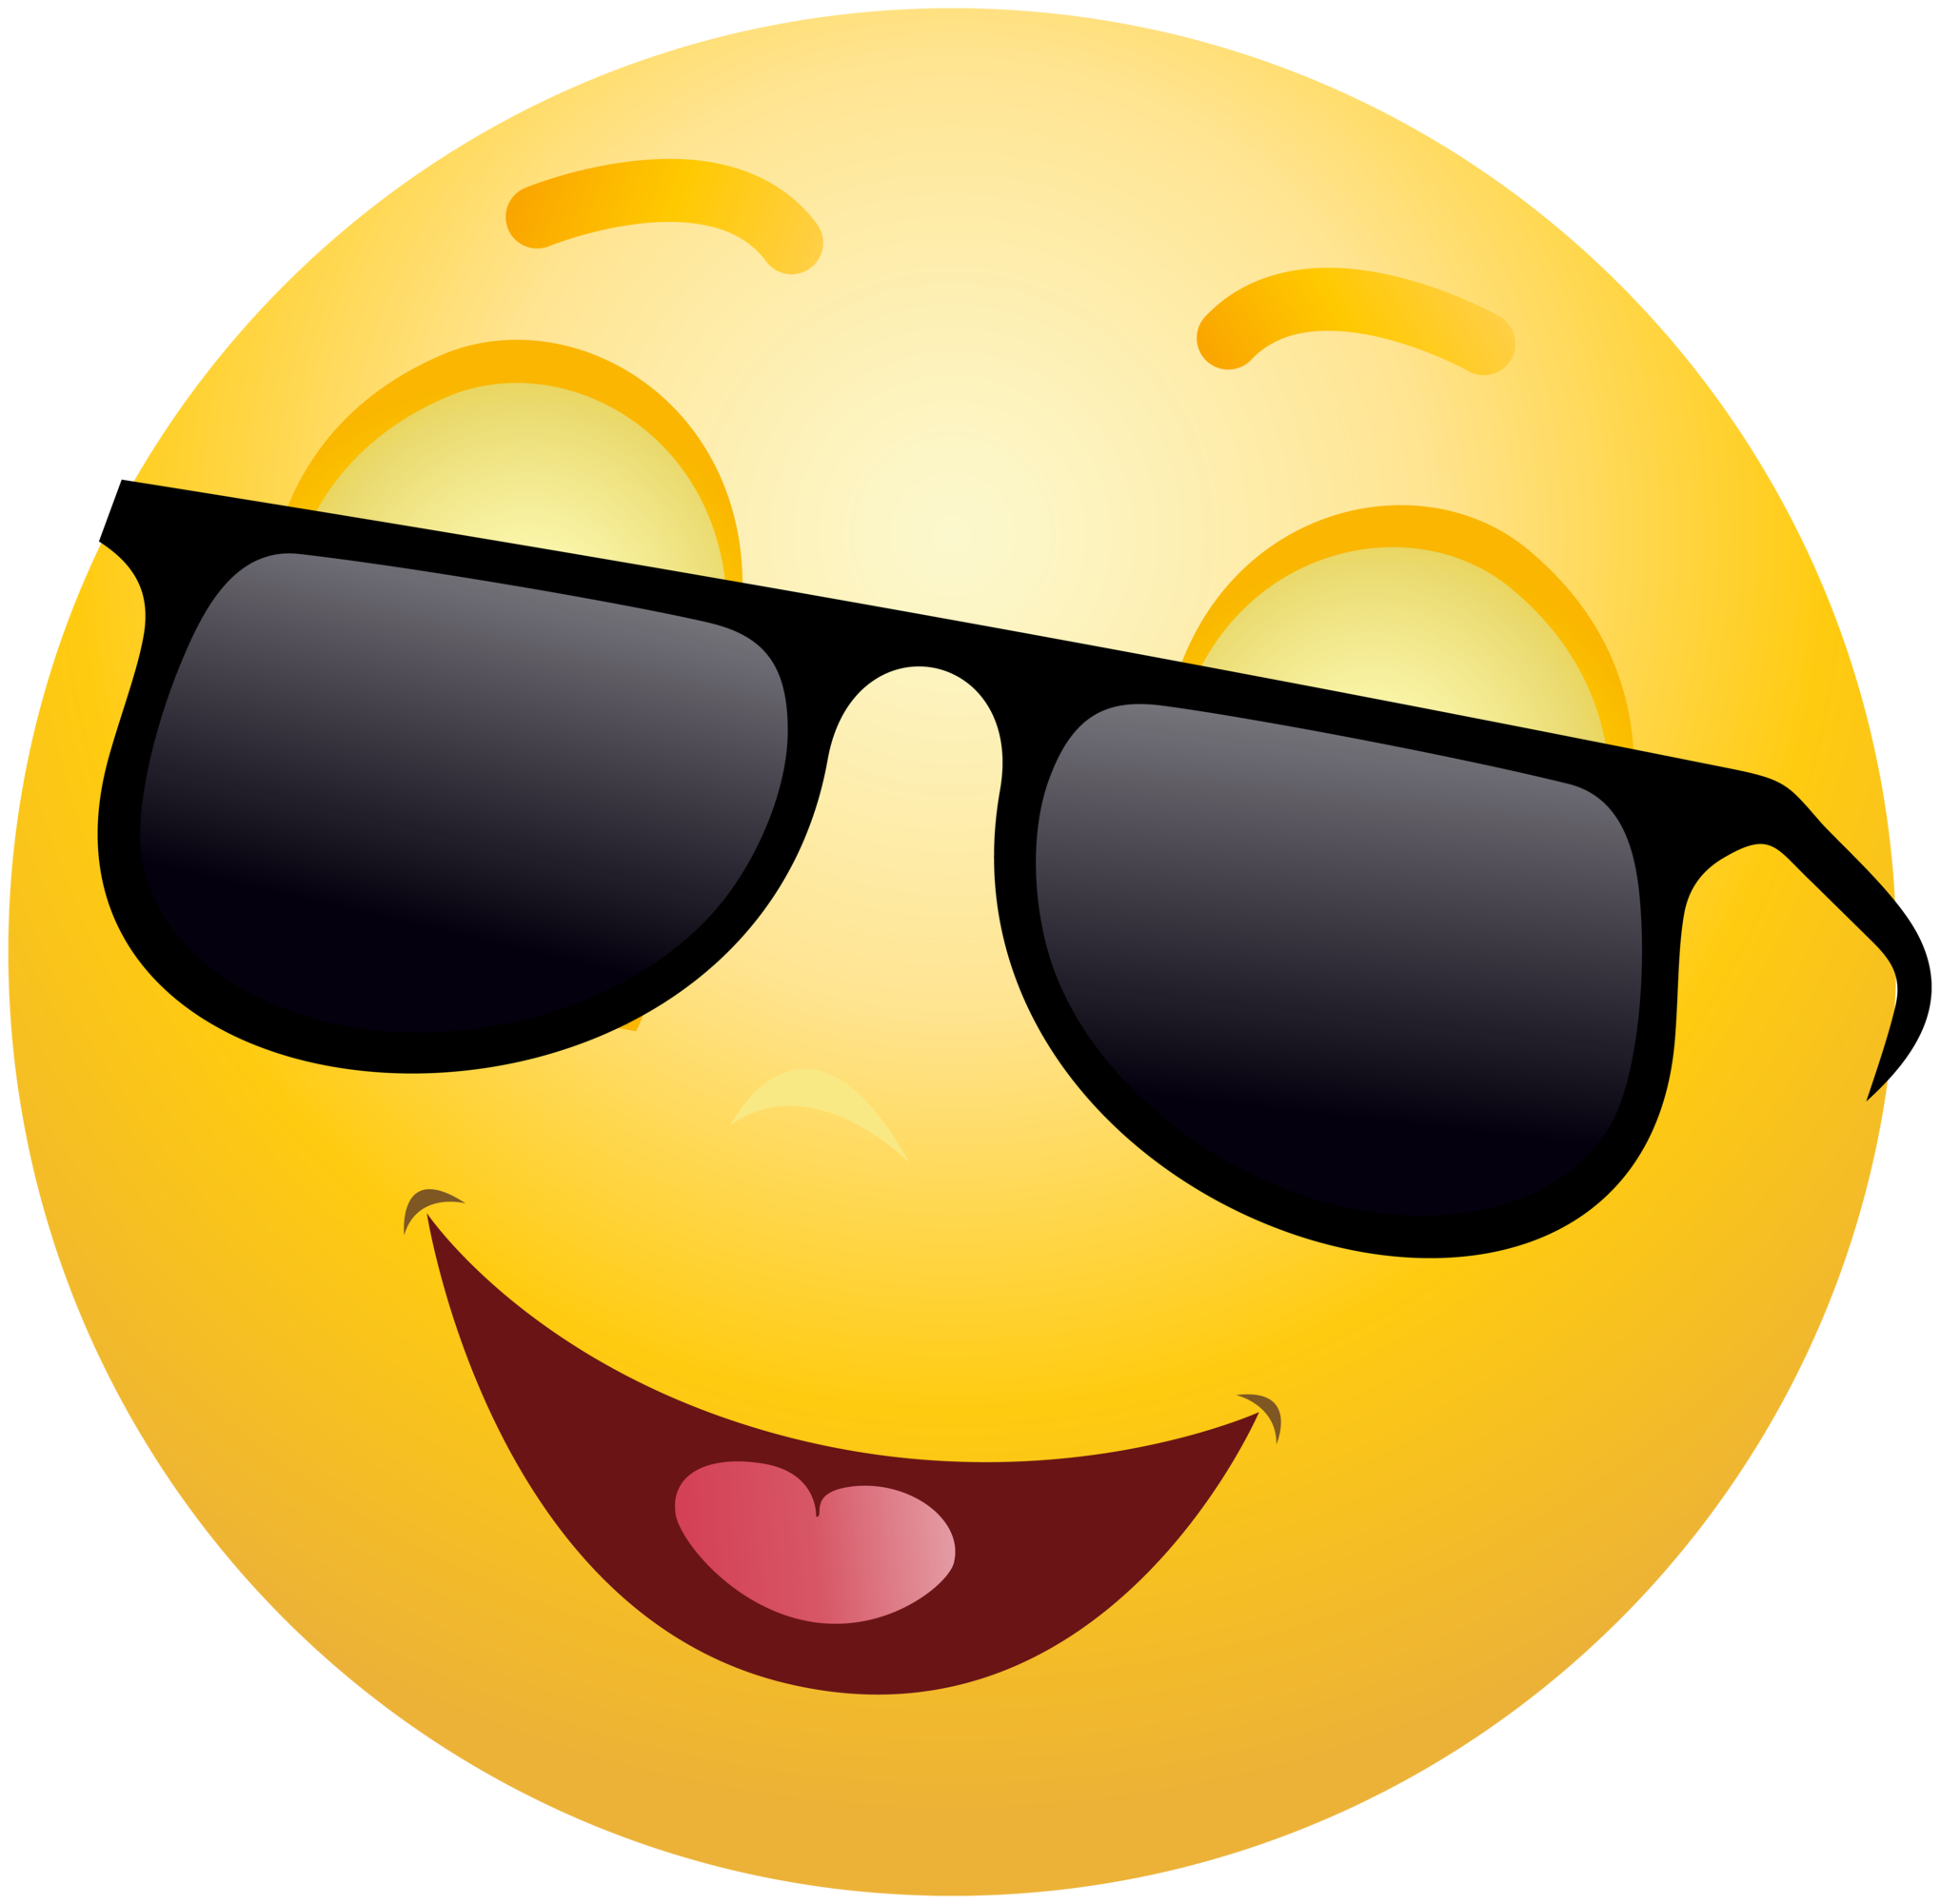 Smile Emoji Face PNG Image Background